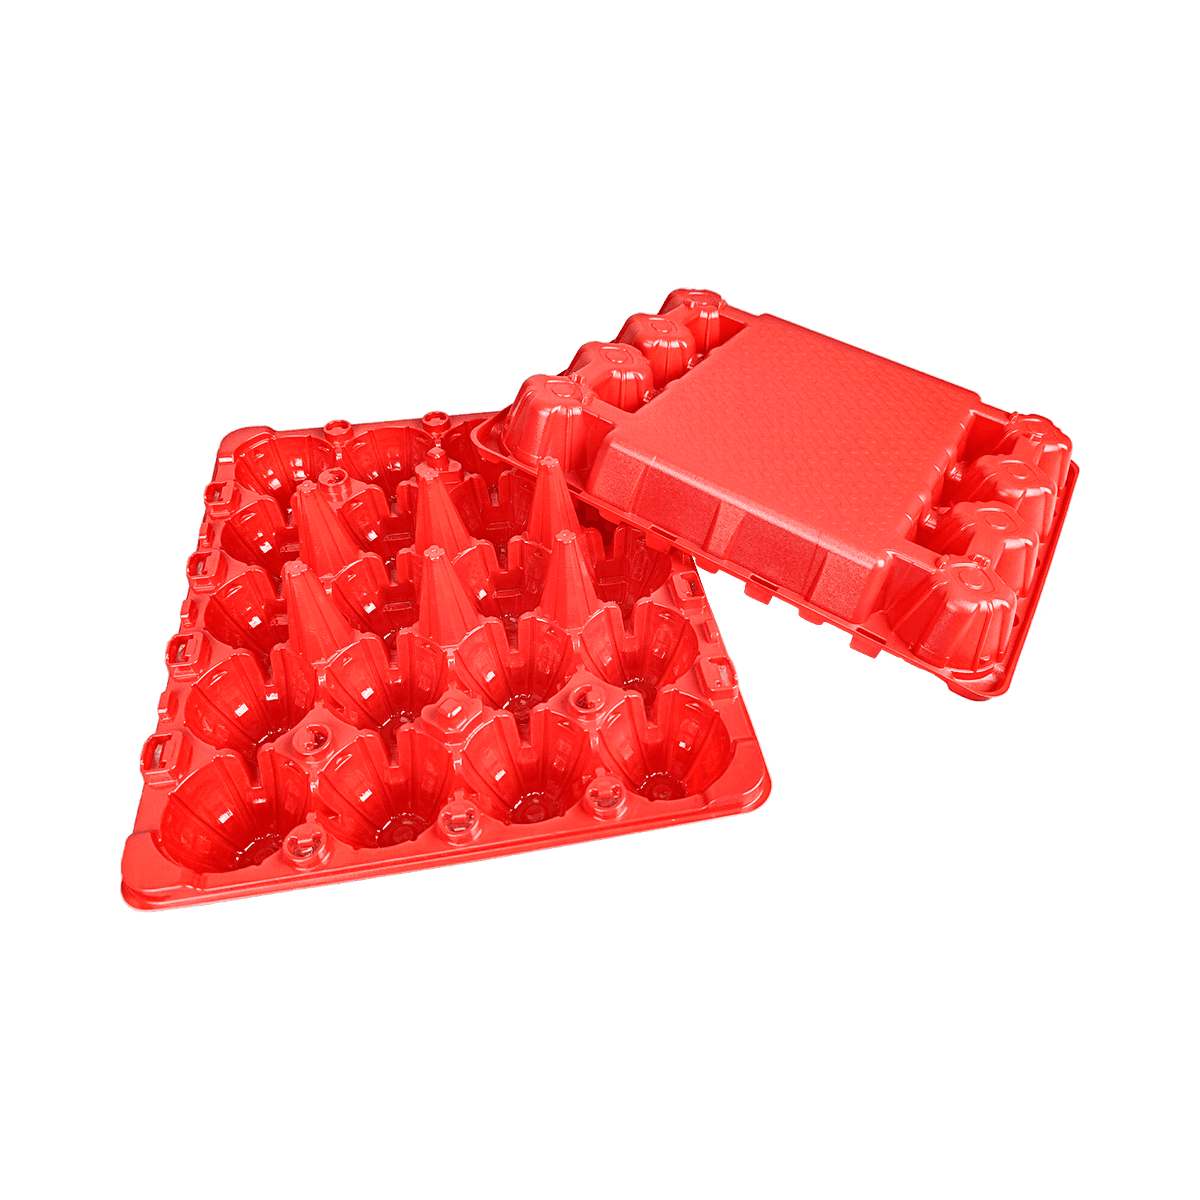 可重复使用的哑光红PET 20鸡蛋盒，适用于家庭牧场养鸡场，商业市场展示